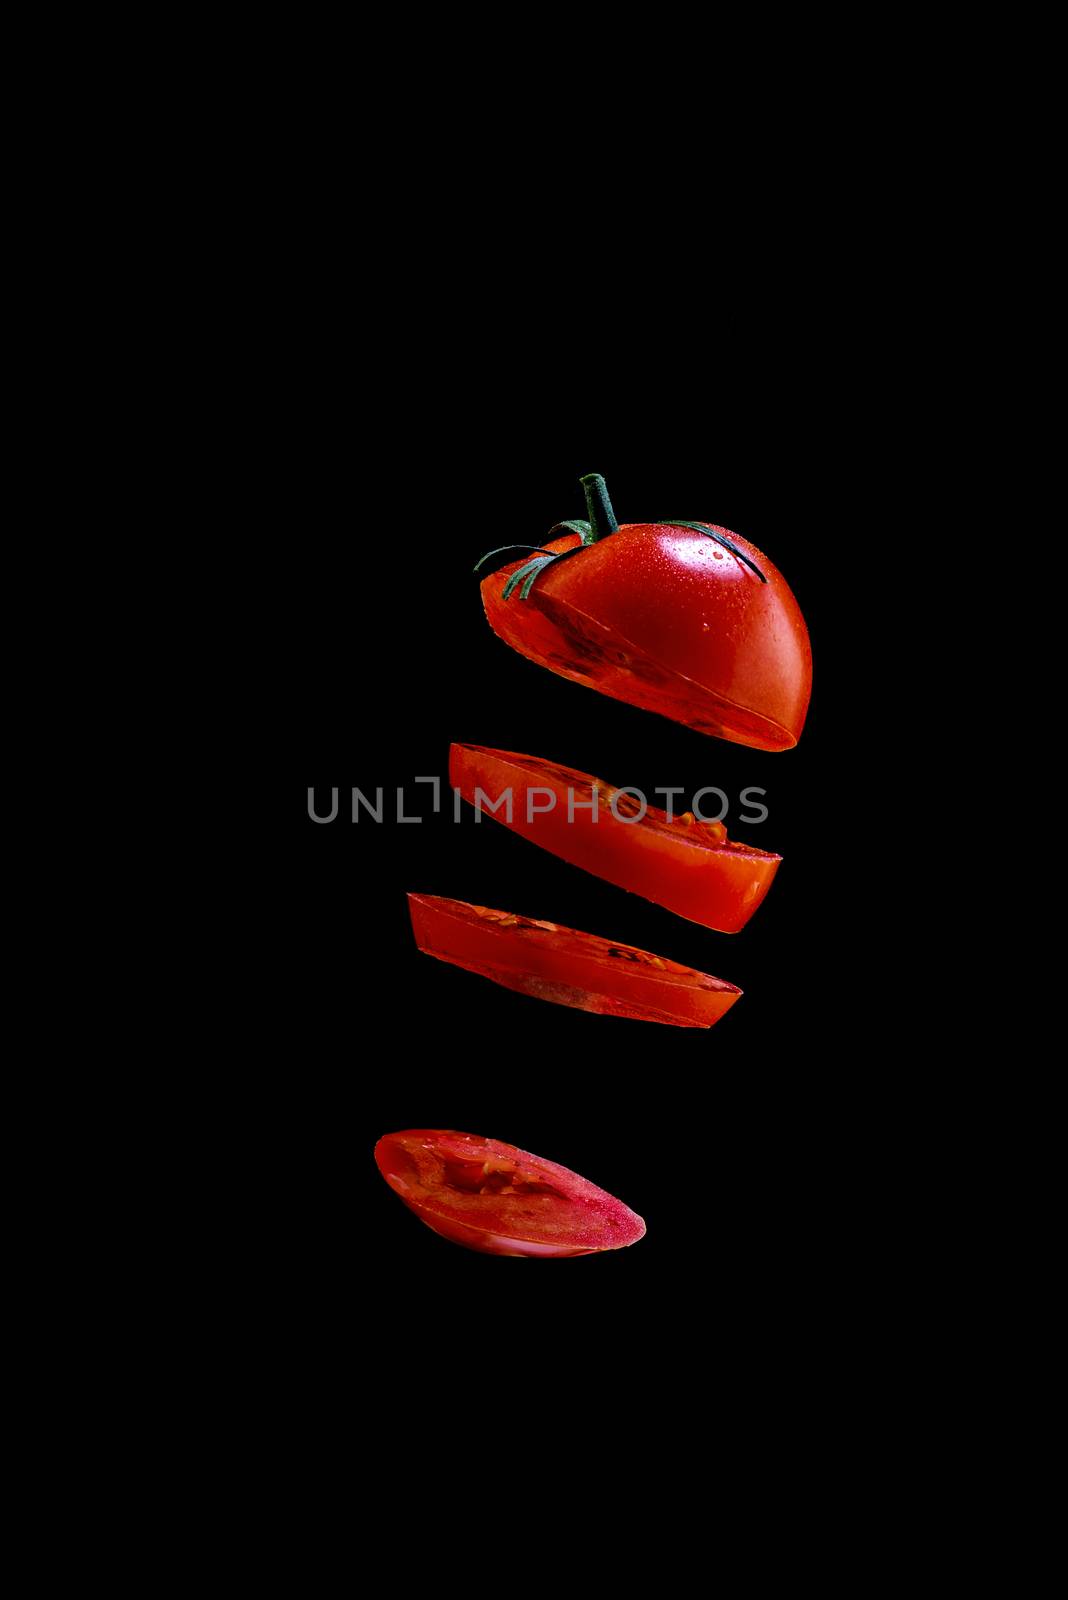 5 Flying tomato slices on a black background by dmitry_derenyuk